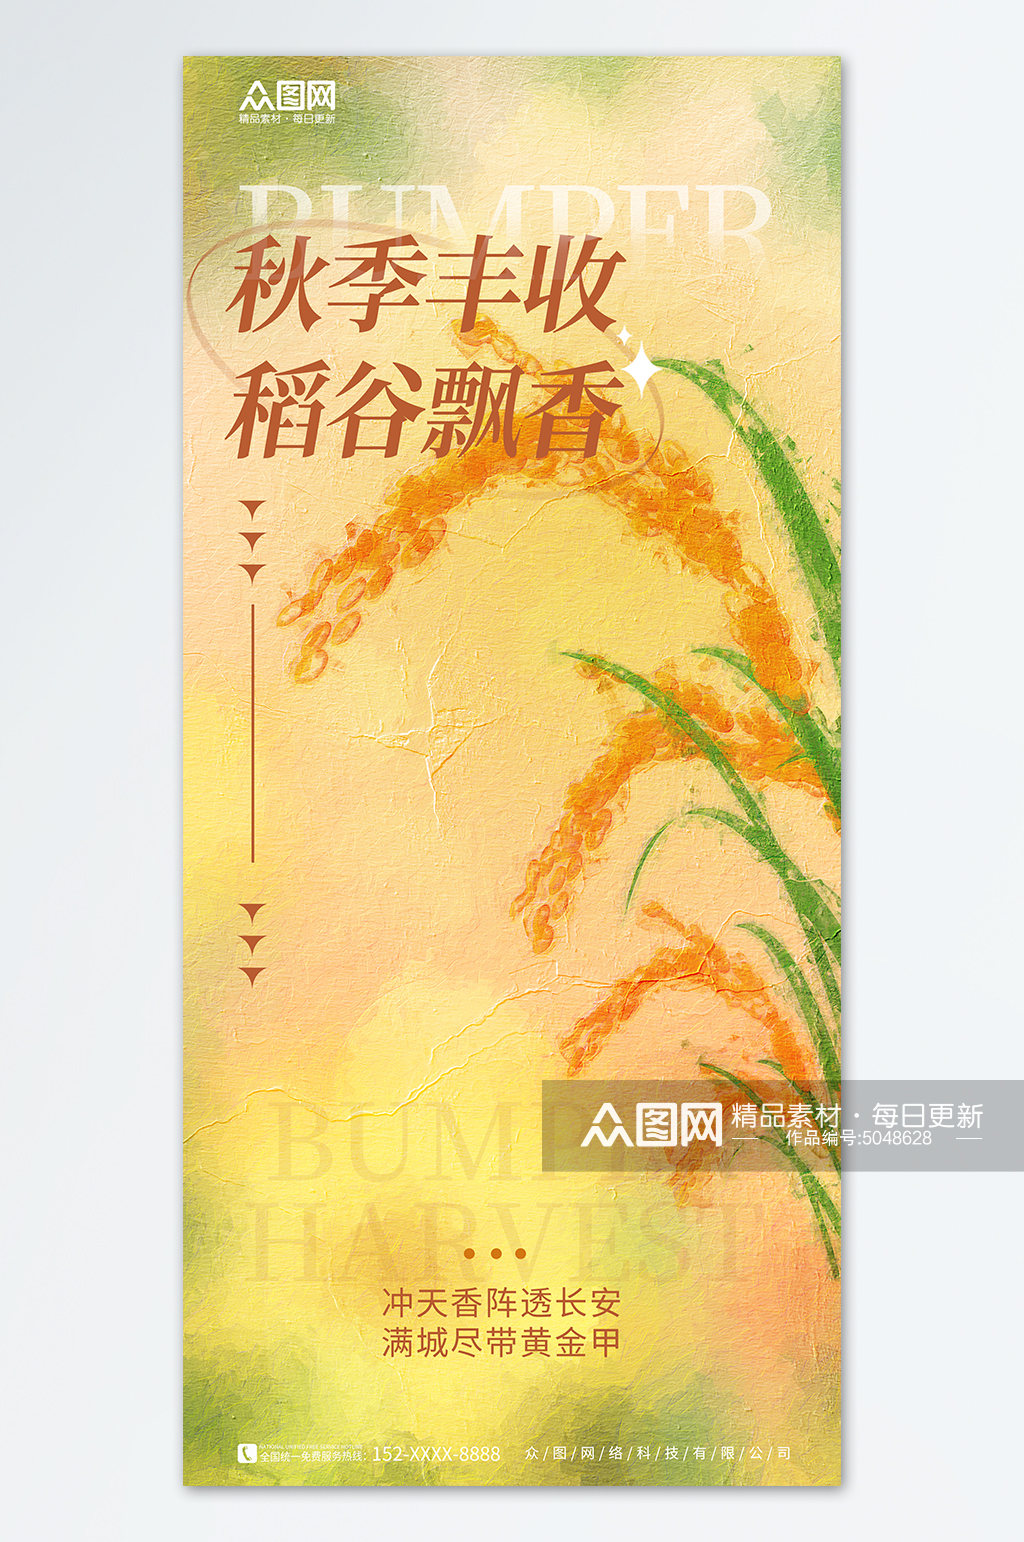 黄色大气简约中国农民丰收节宣传海报素材